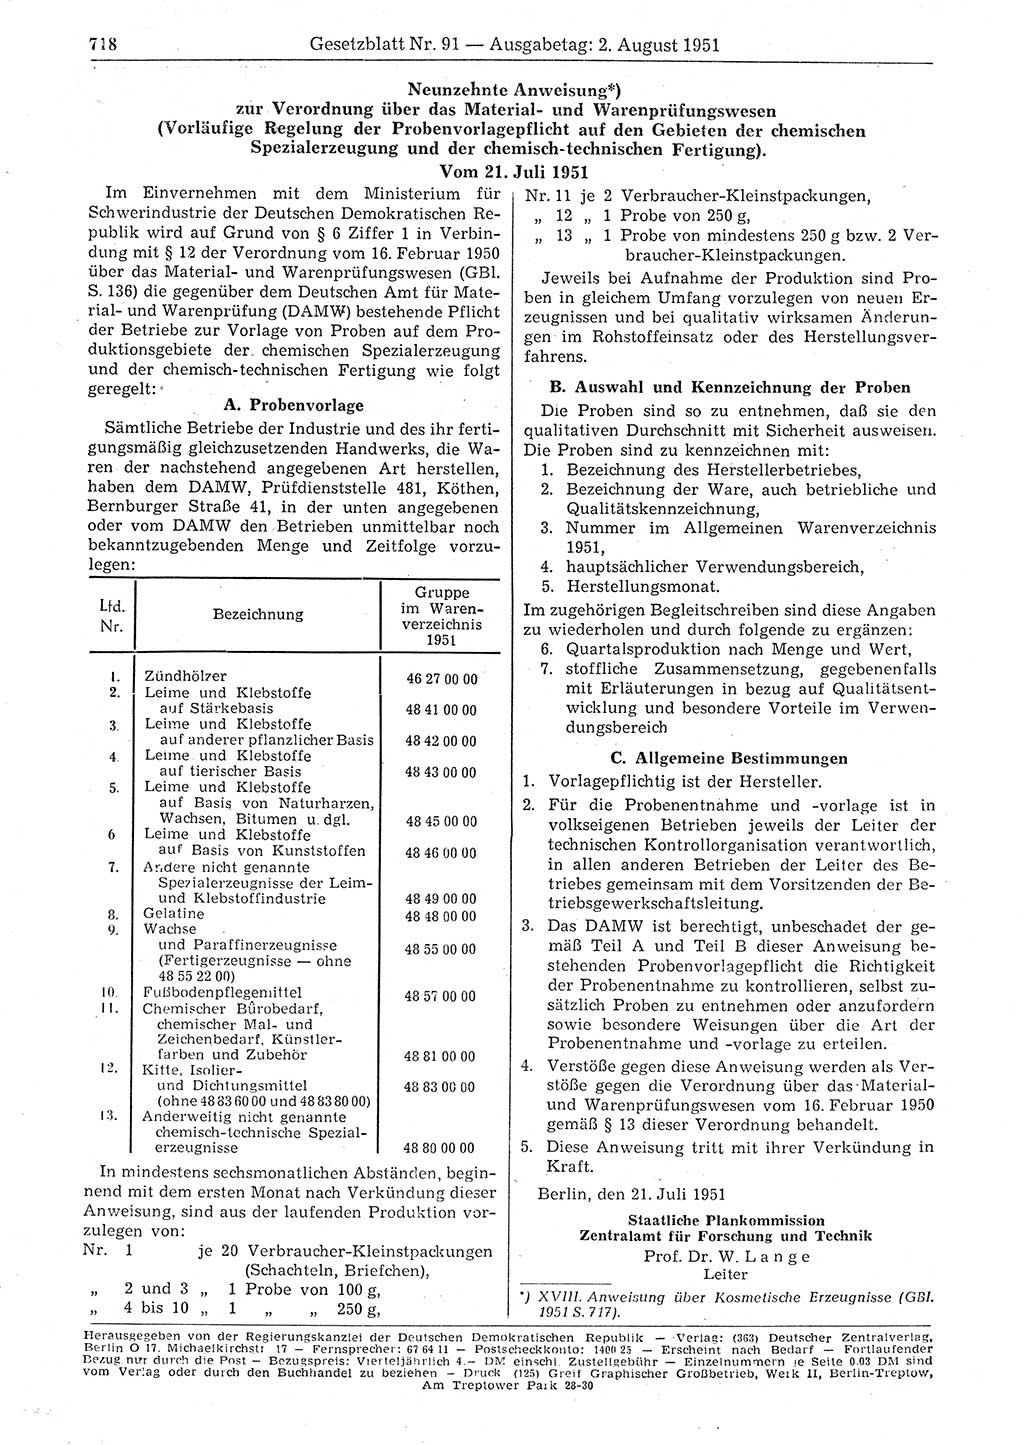 Gesetzblatt (GBl.) der Deutschen Demokratischen Republik (DDR) 1951, Seite 718 (GBl. DDR 1951, S. 718)